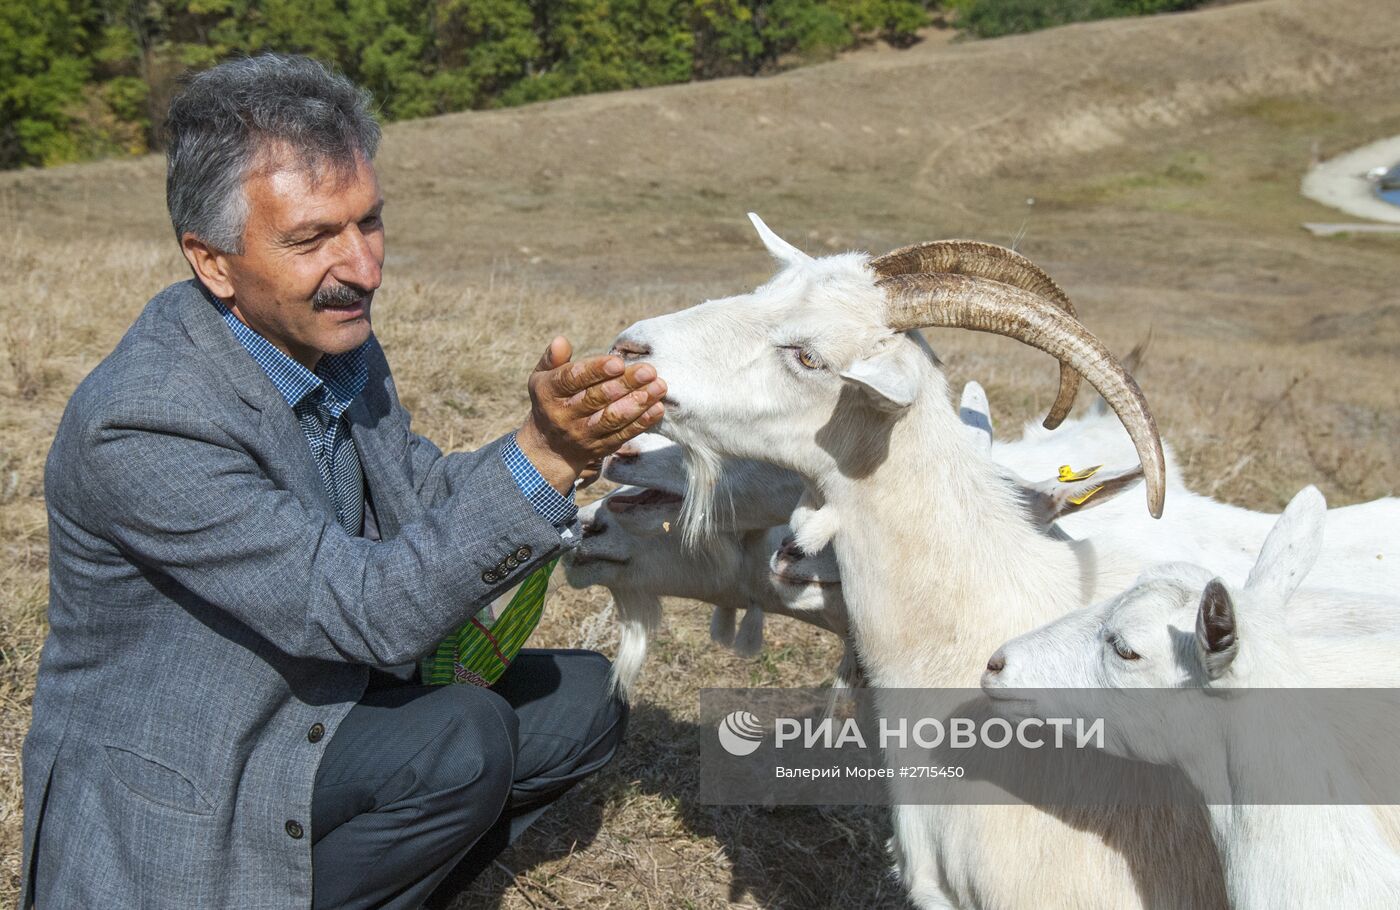 Фермерское хозяйство "Альфа" в Белгородской области